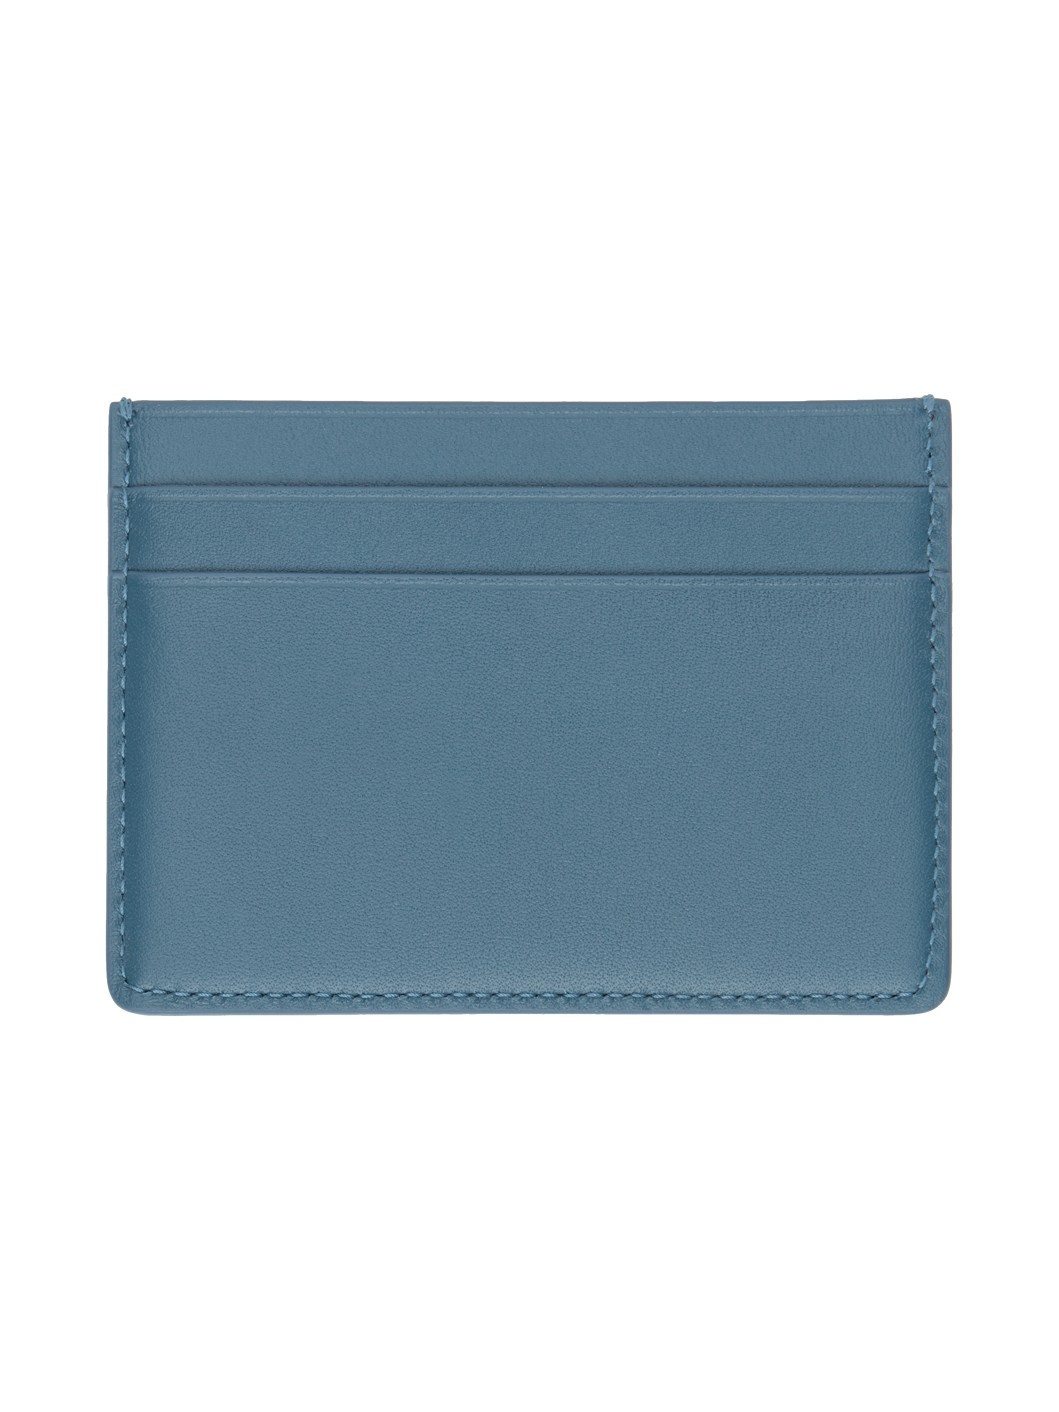 Blue Credit Card Holder - 2